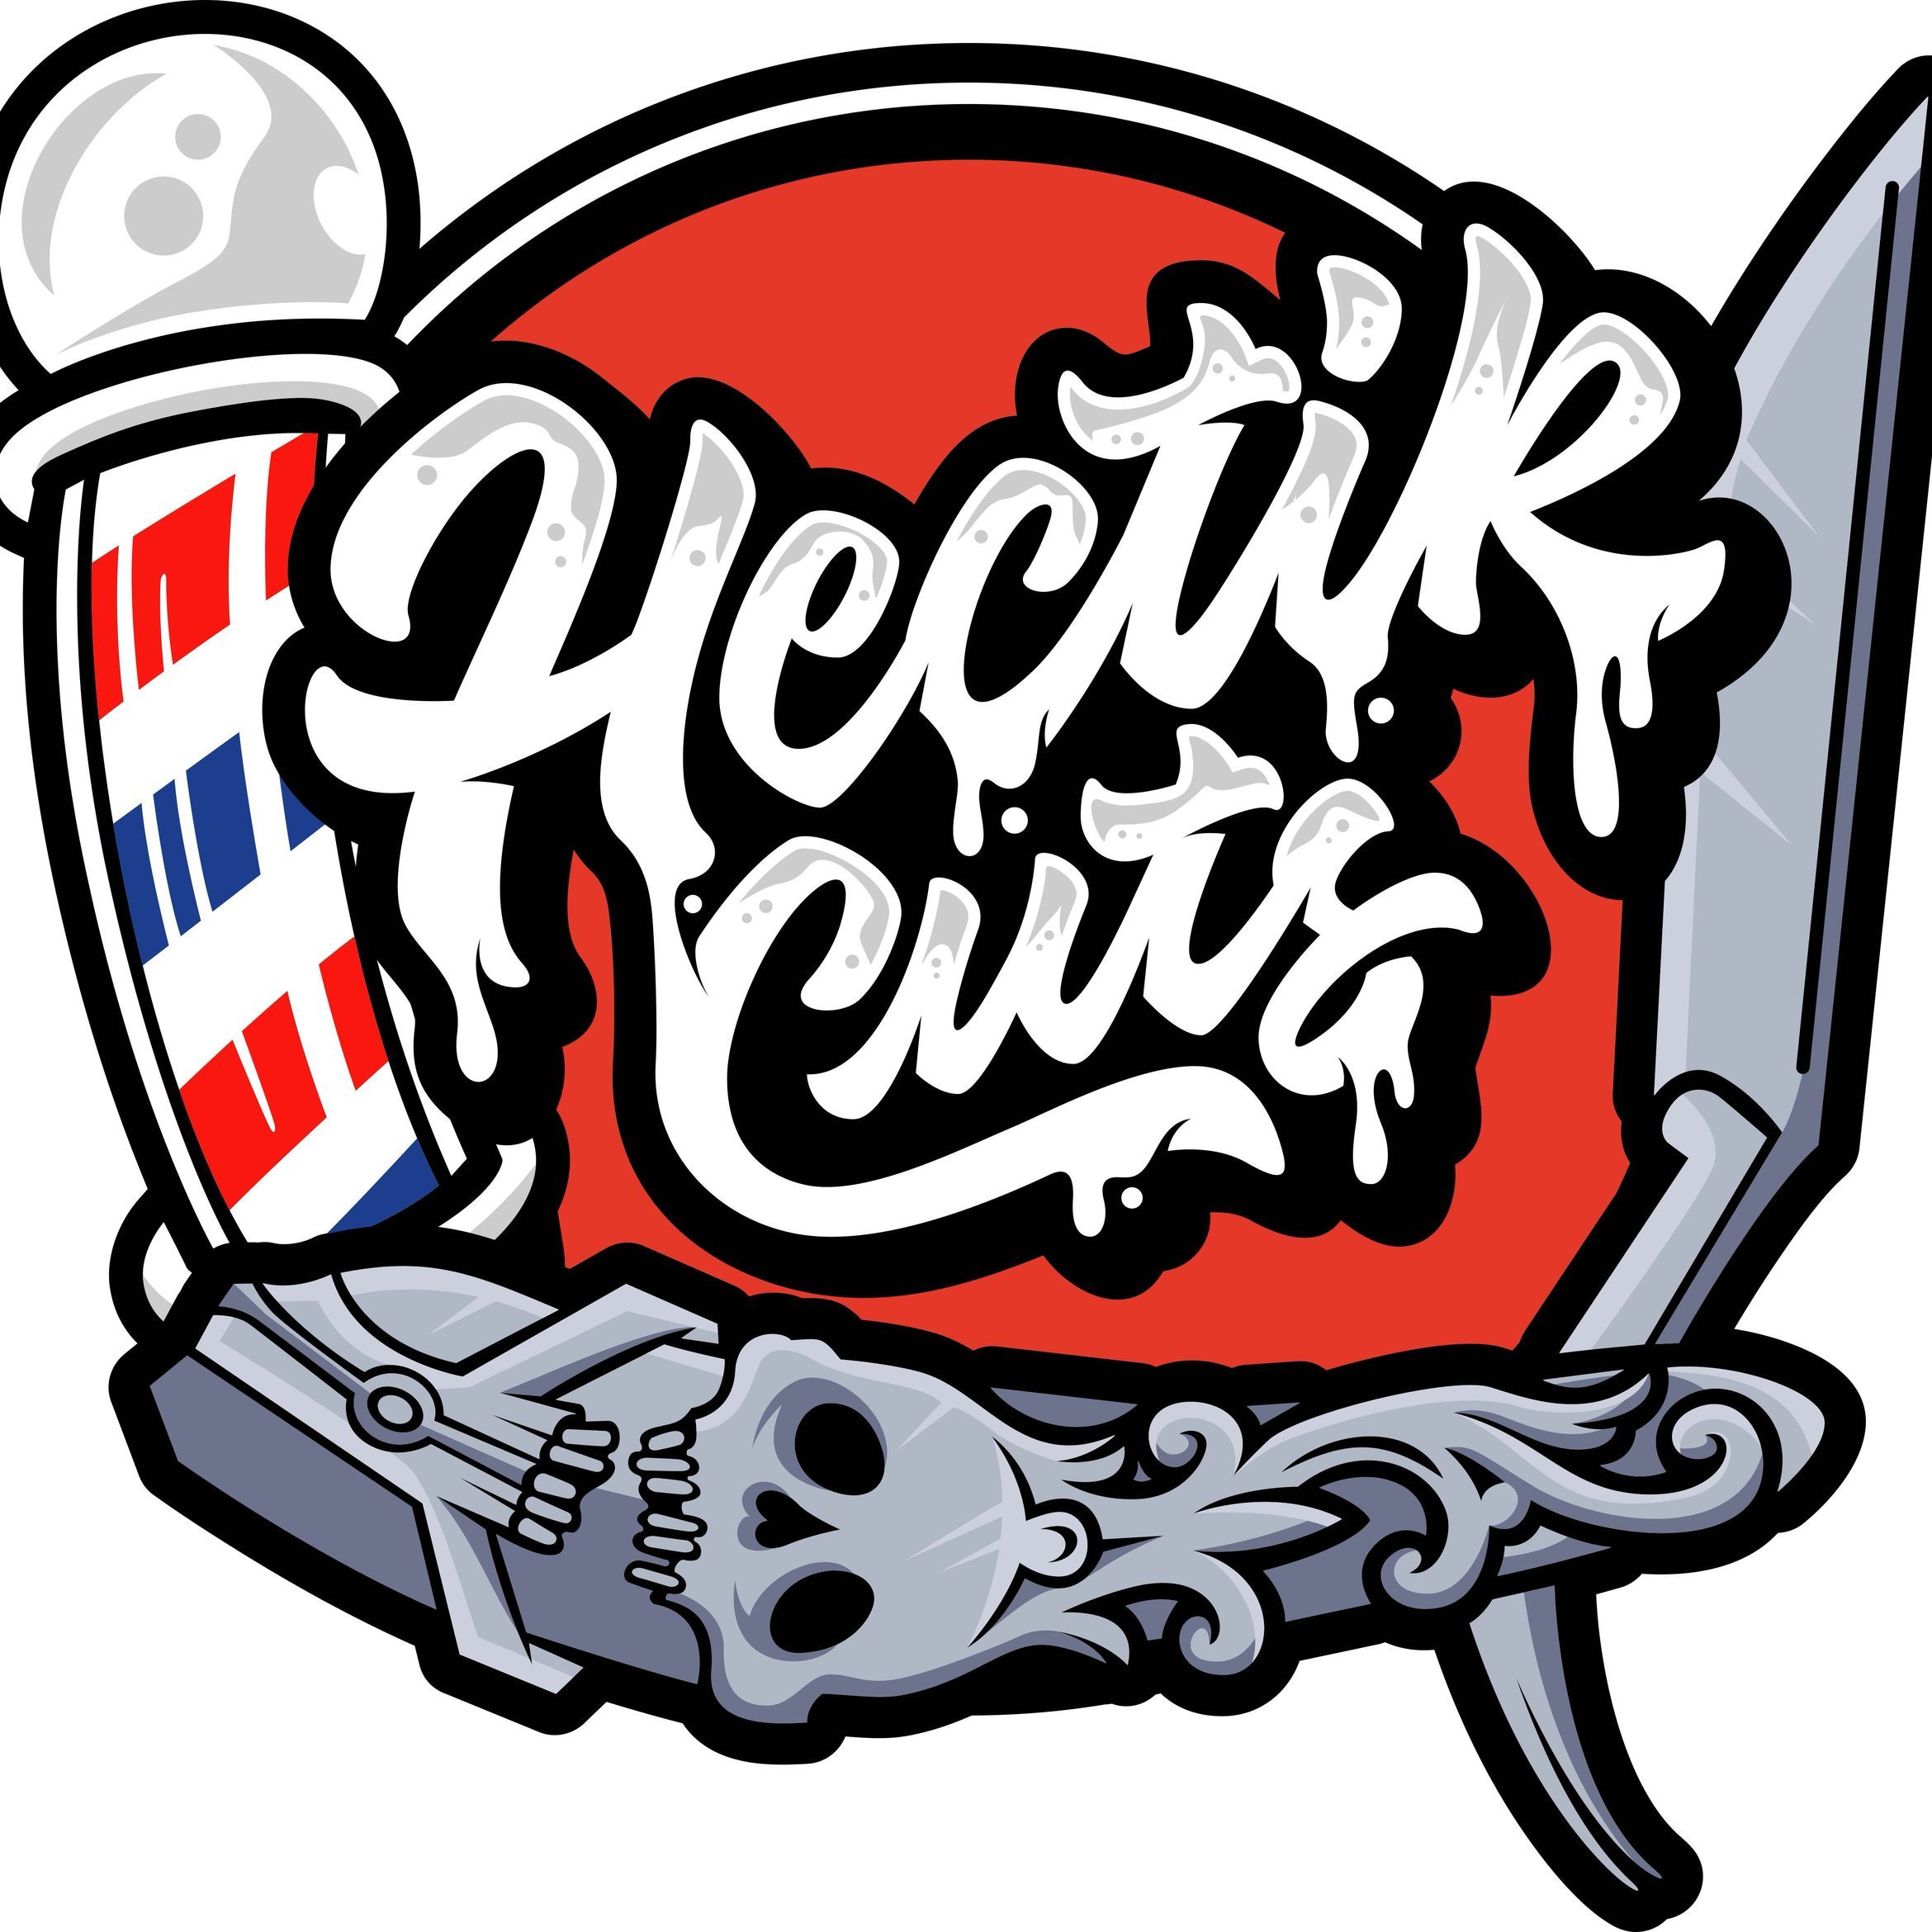 Hectik Cuts, 9650 S Pulaski Rd, Oak Lawn, 60453